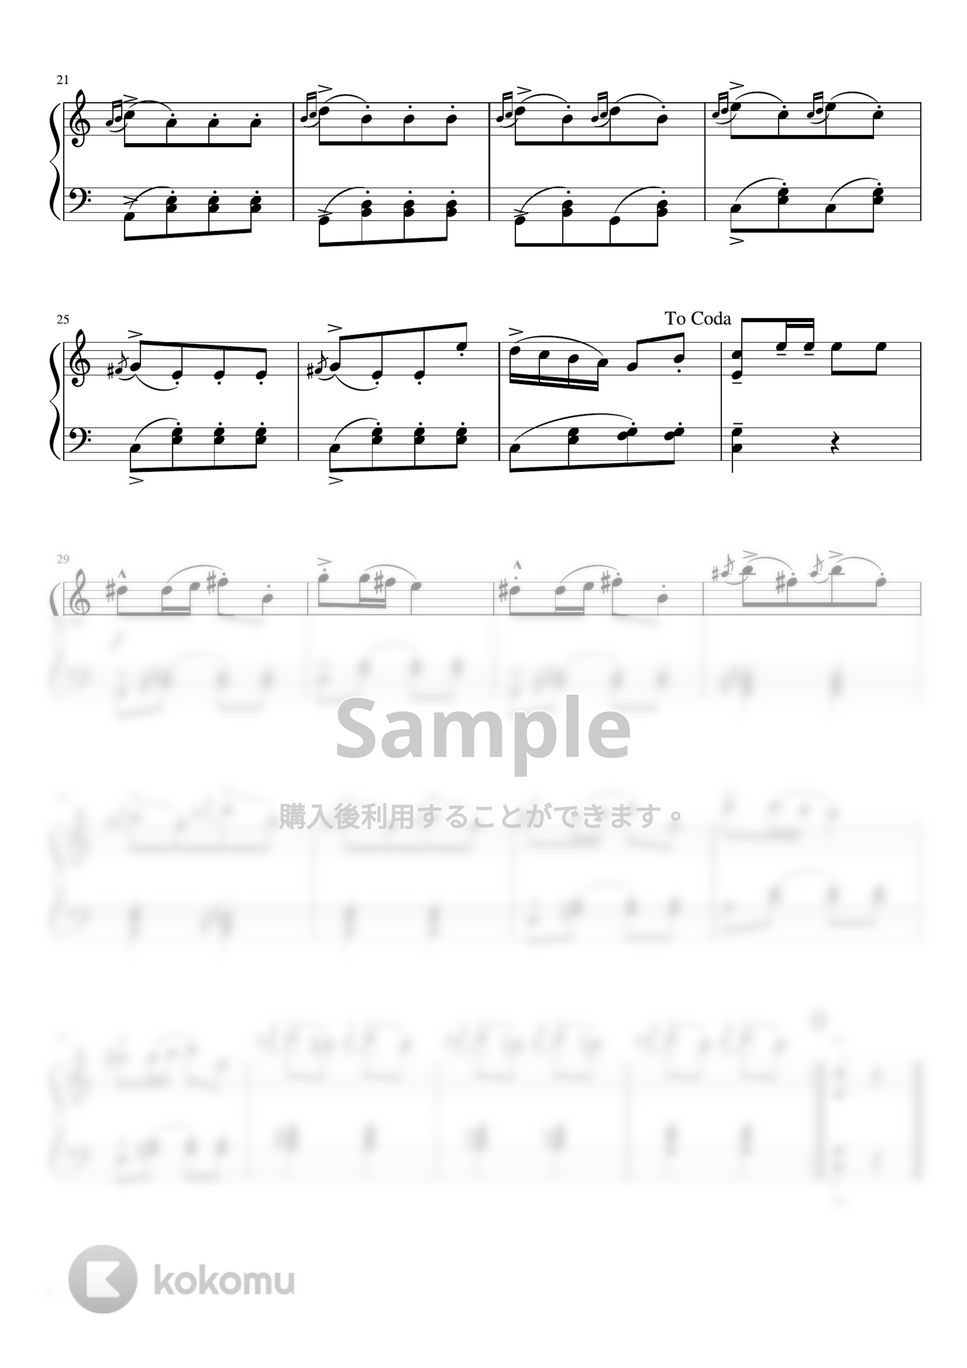 ベートーヴェン - トルコ行進曲 (C・ピアノソロ初〜中級) by pfkaori